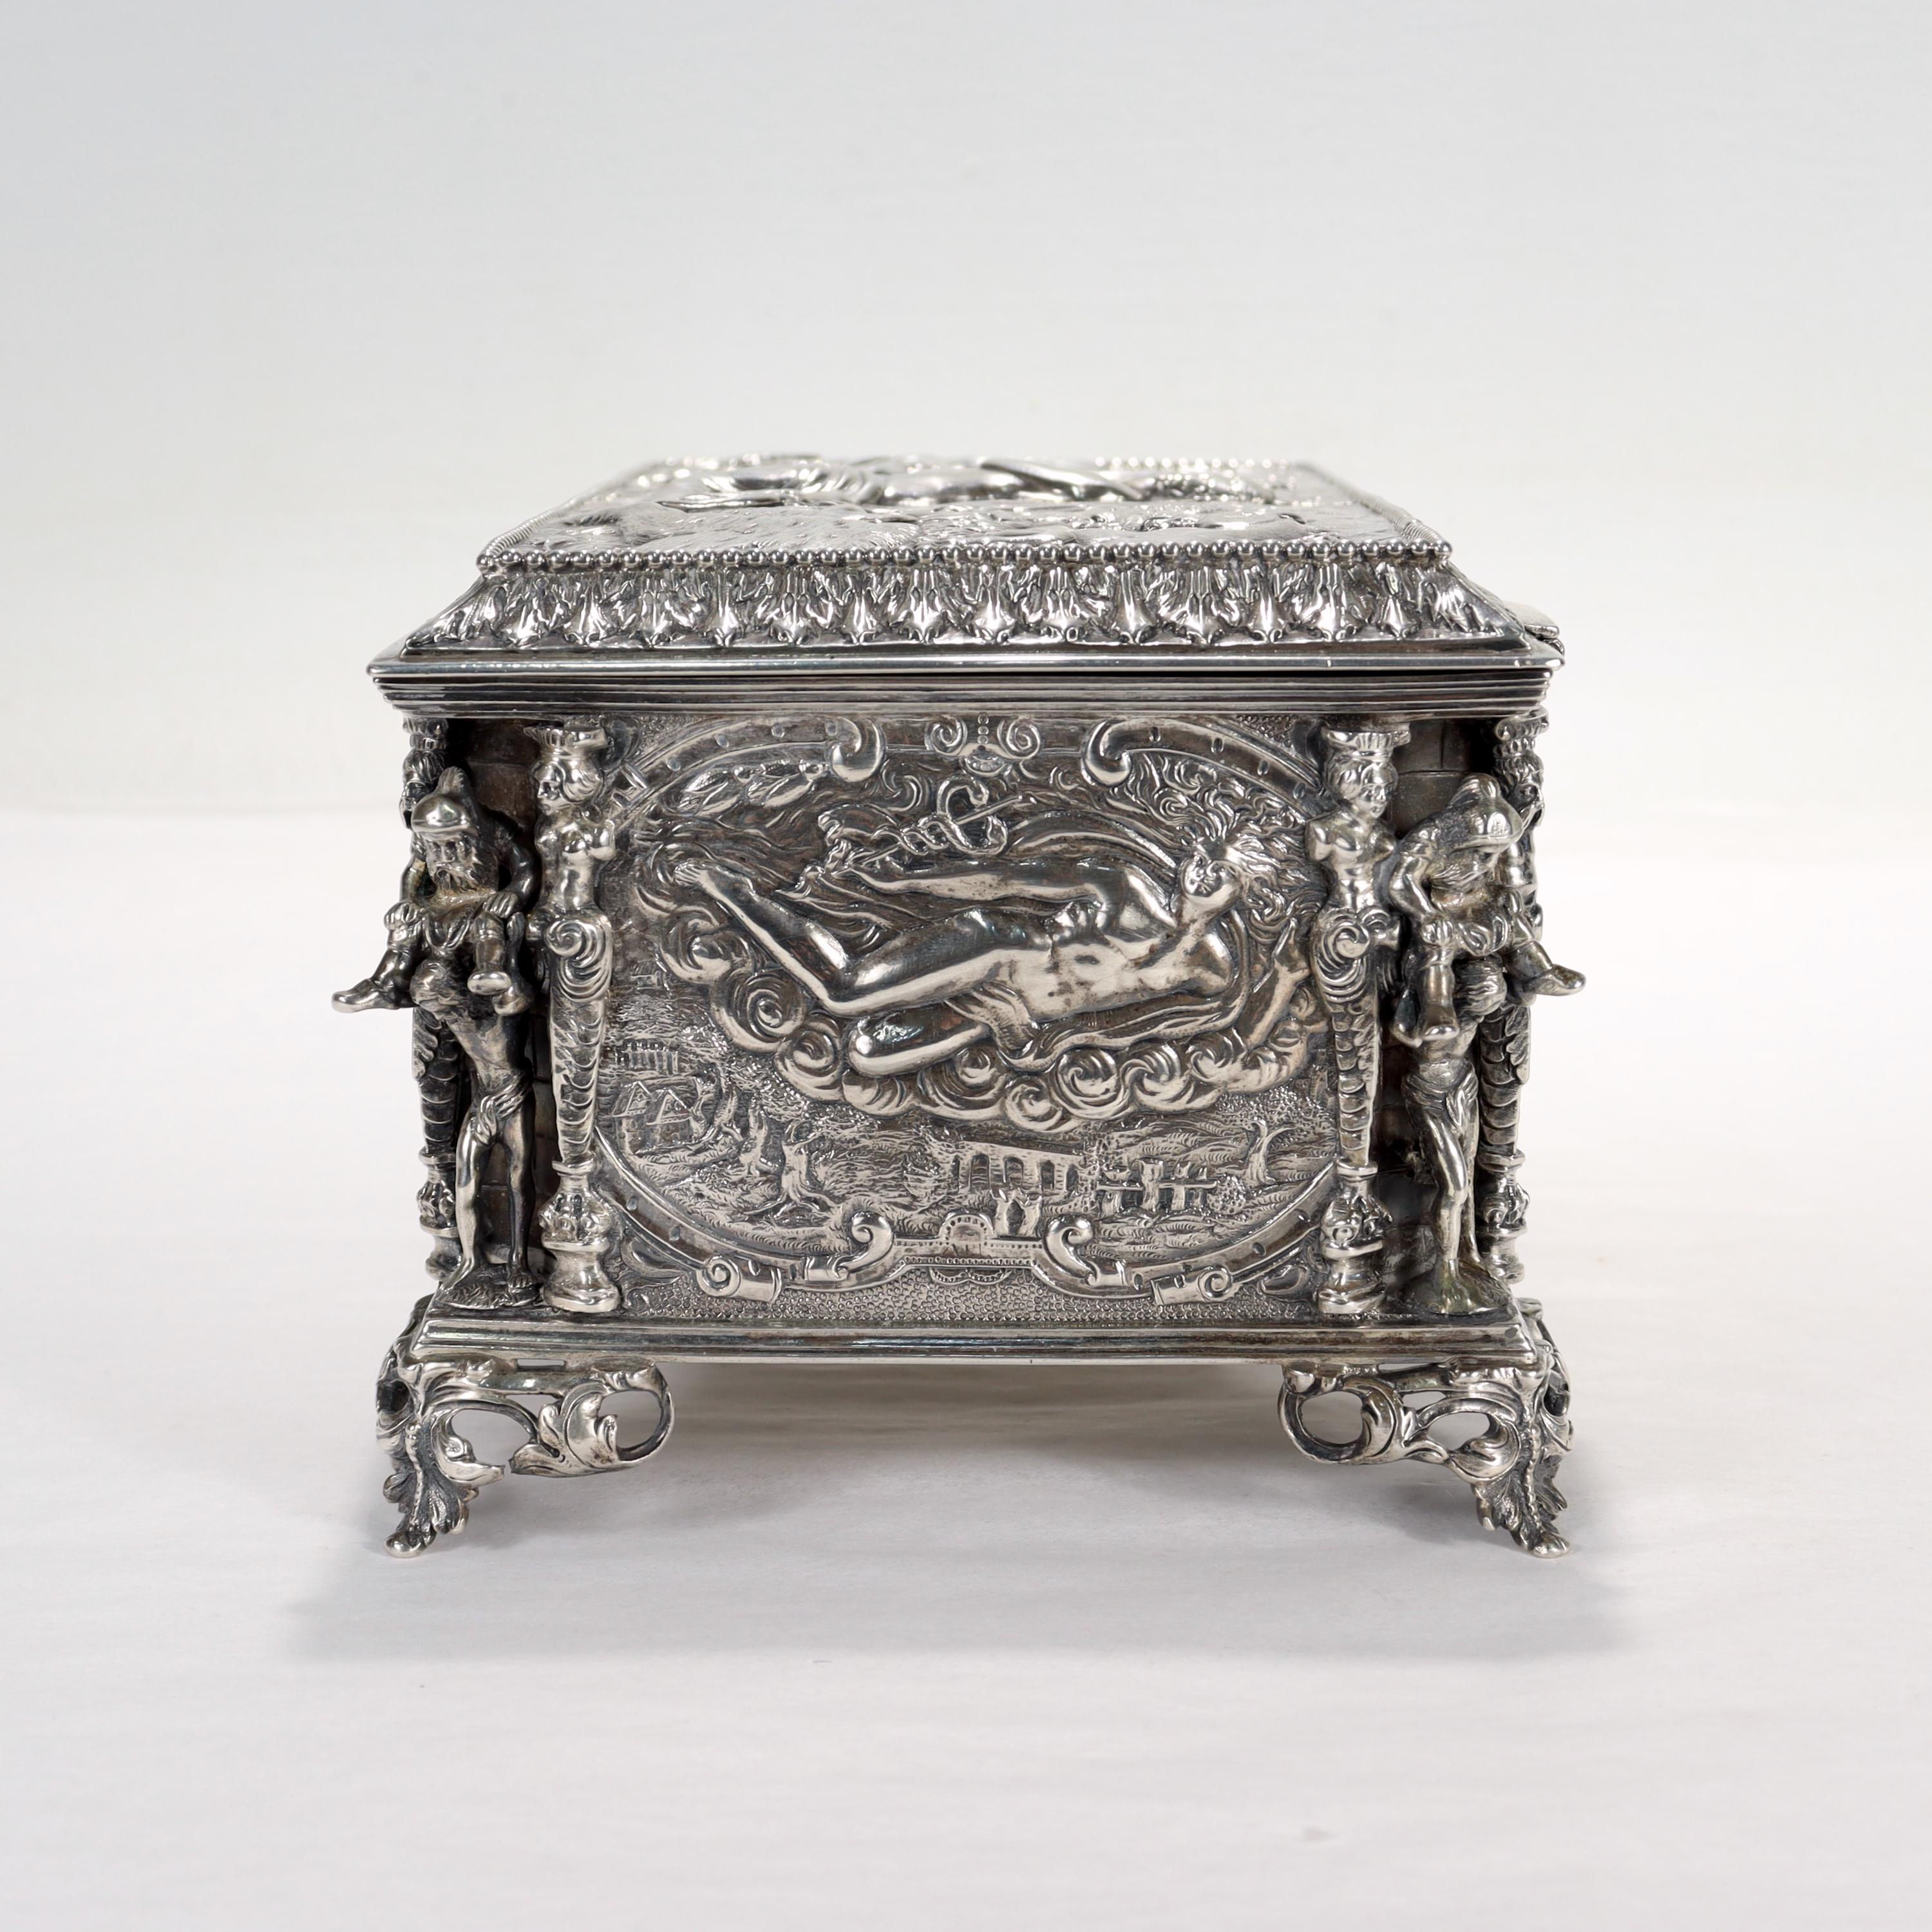 Women's or Men's Antique German Figural Renaissance Revival Solid Silver Table Box or Casket For Sale